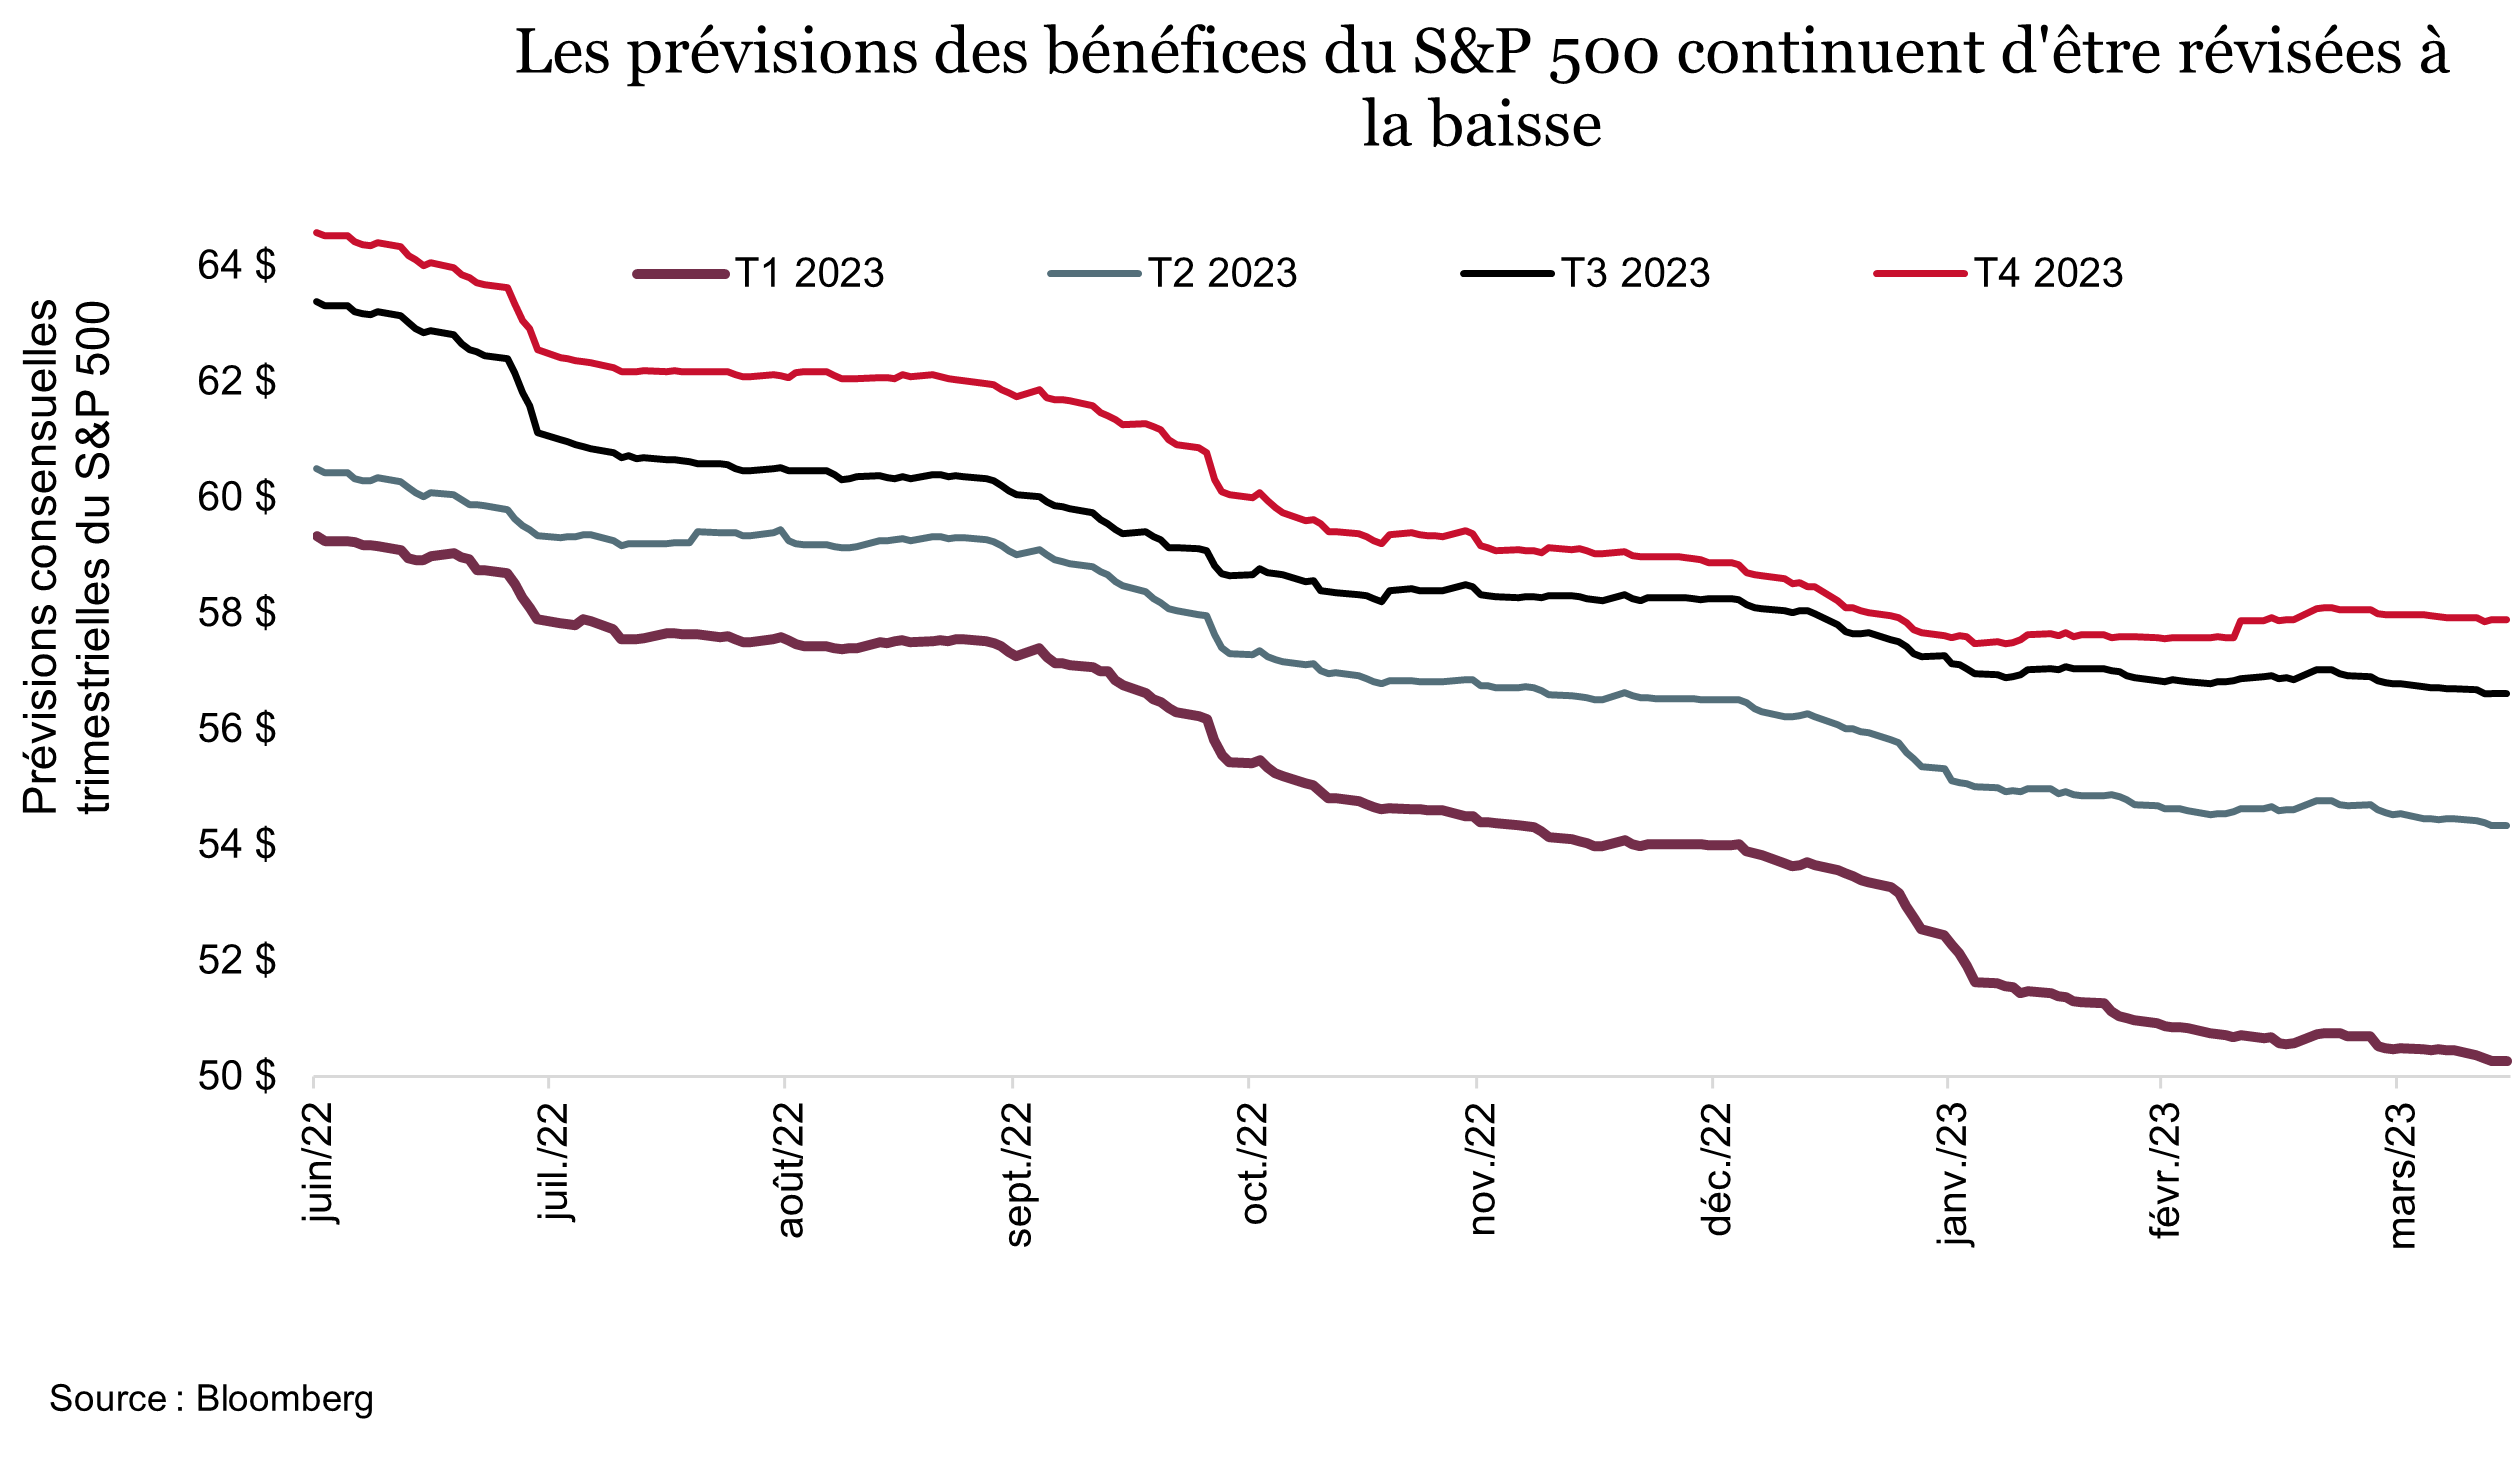 Les prévisions des bénéfices du S&P 500 continuent d'être révisées à la baisse